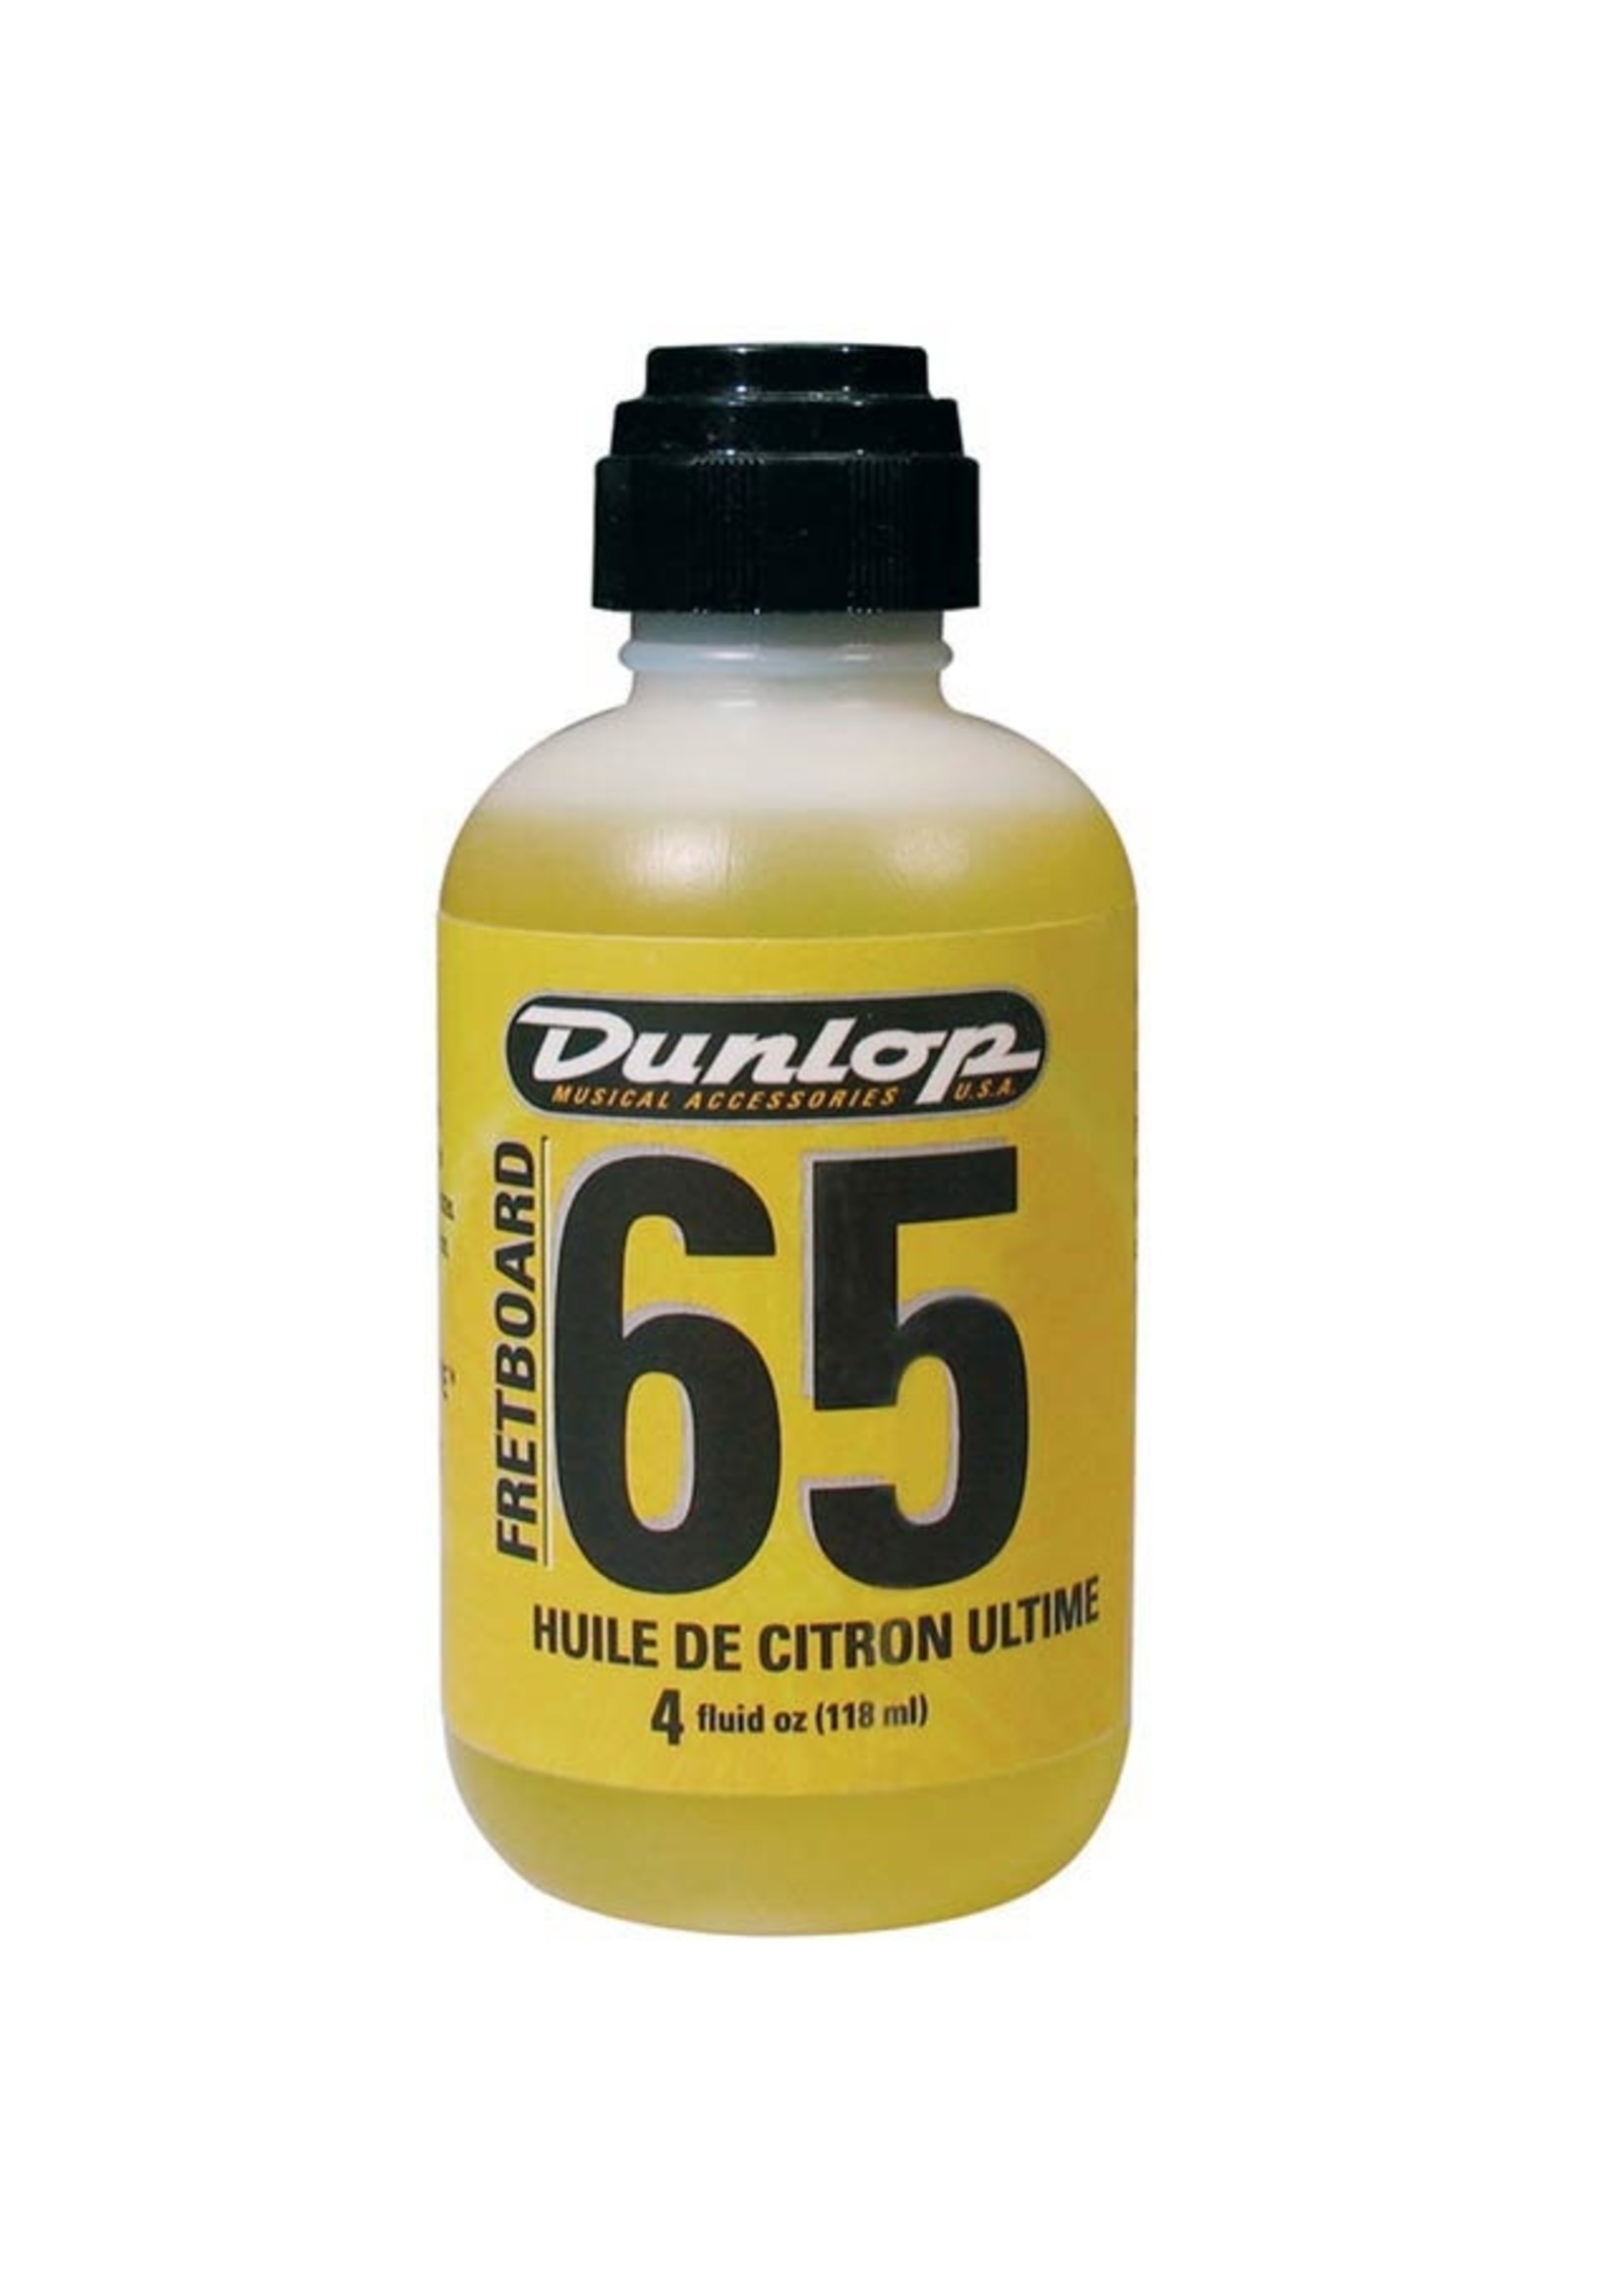 Dunlop Dunlop 65 Fretboard lemon oil